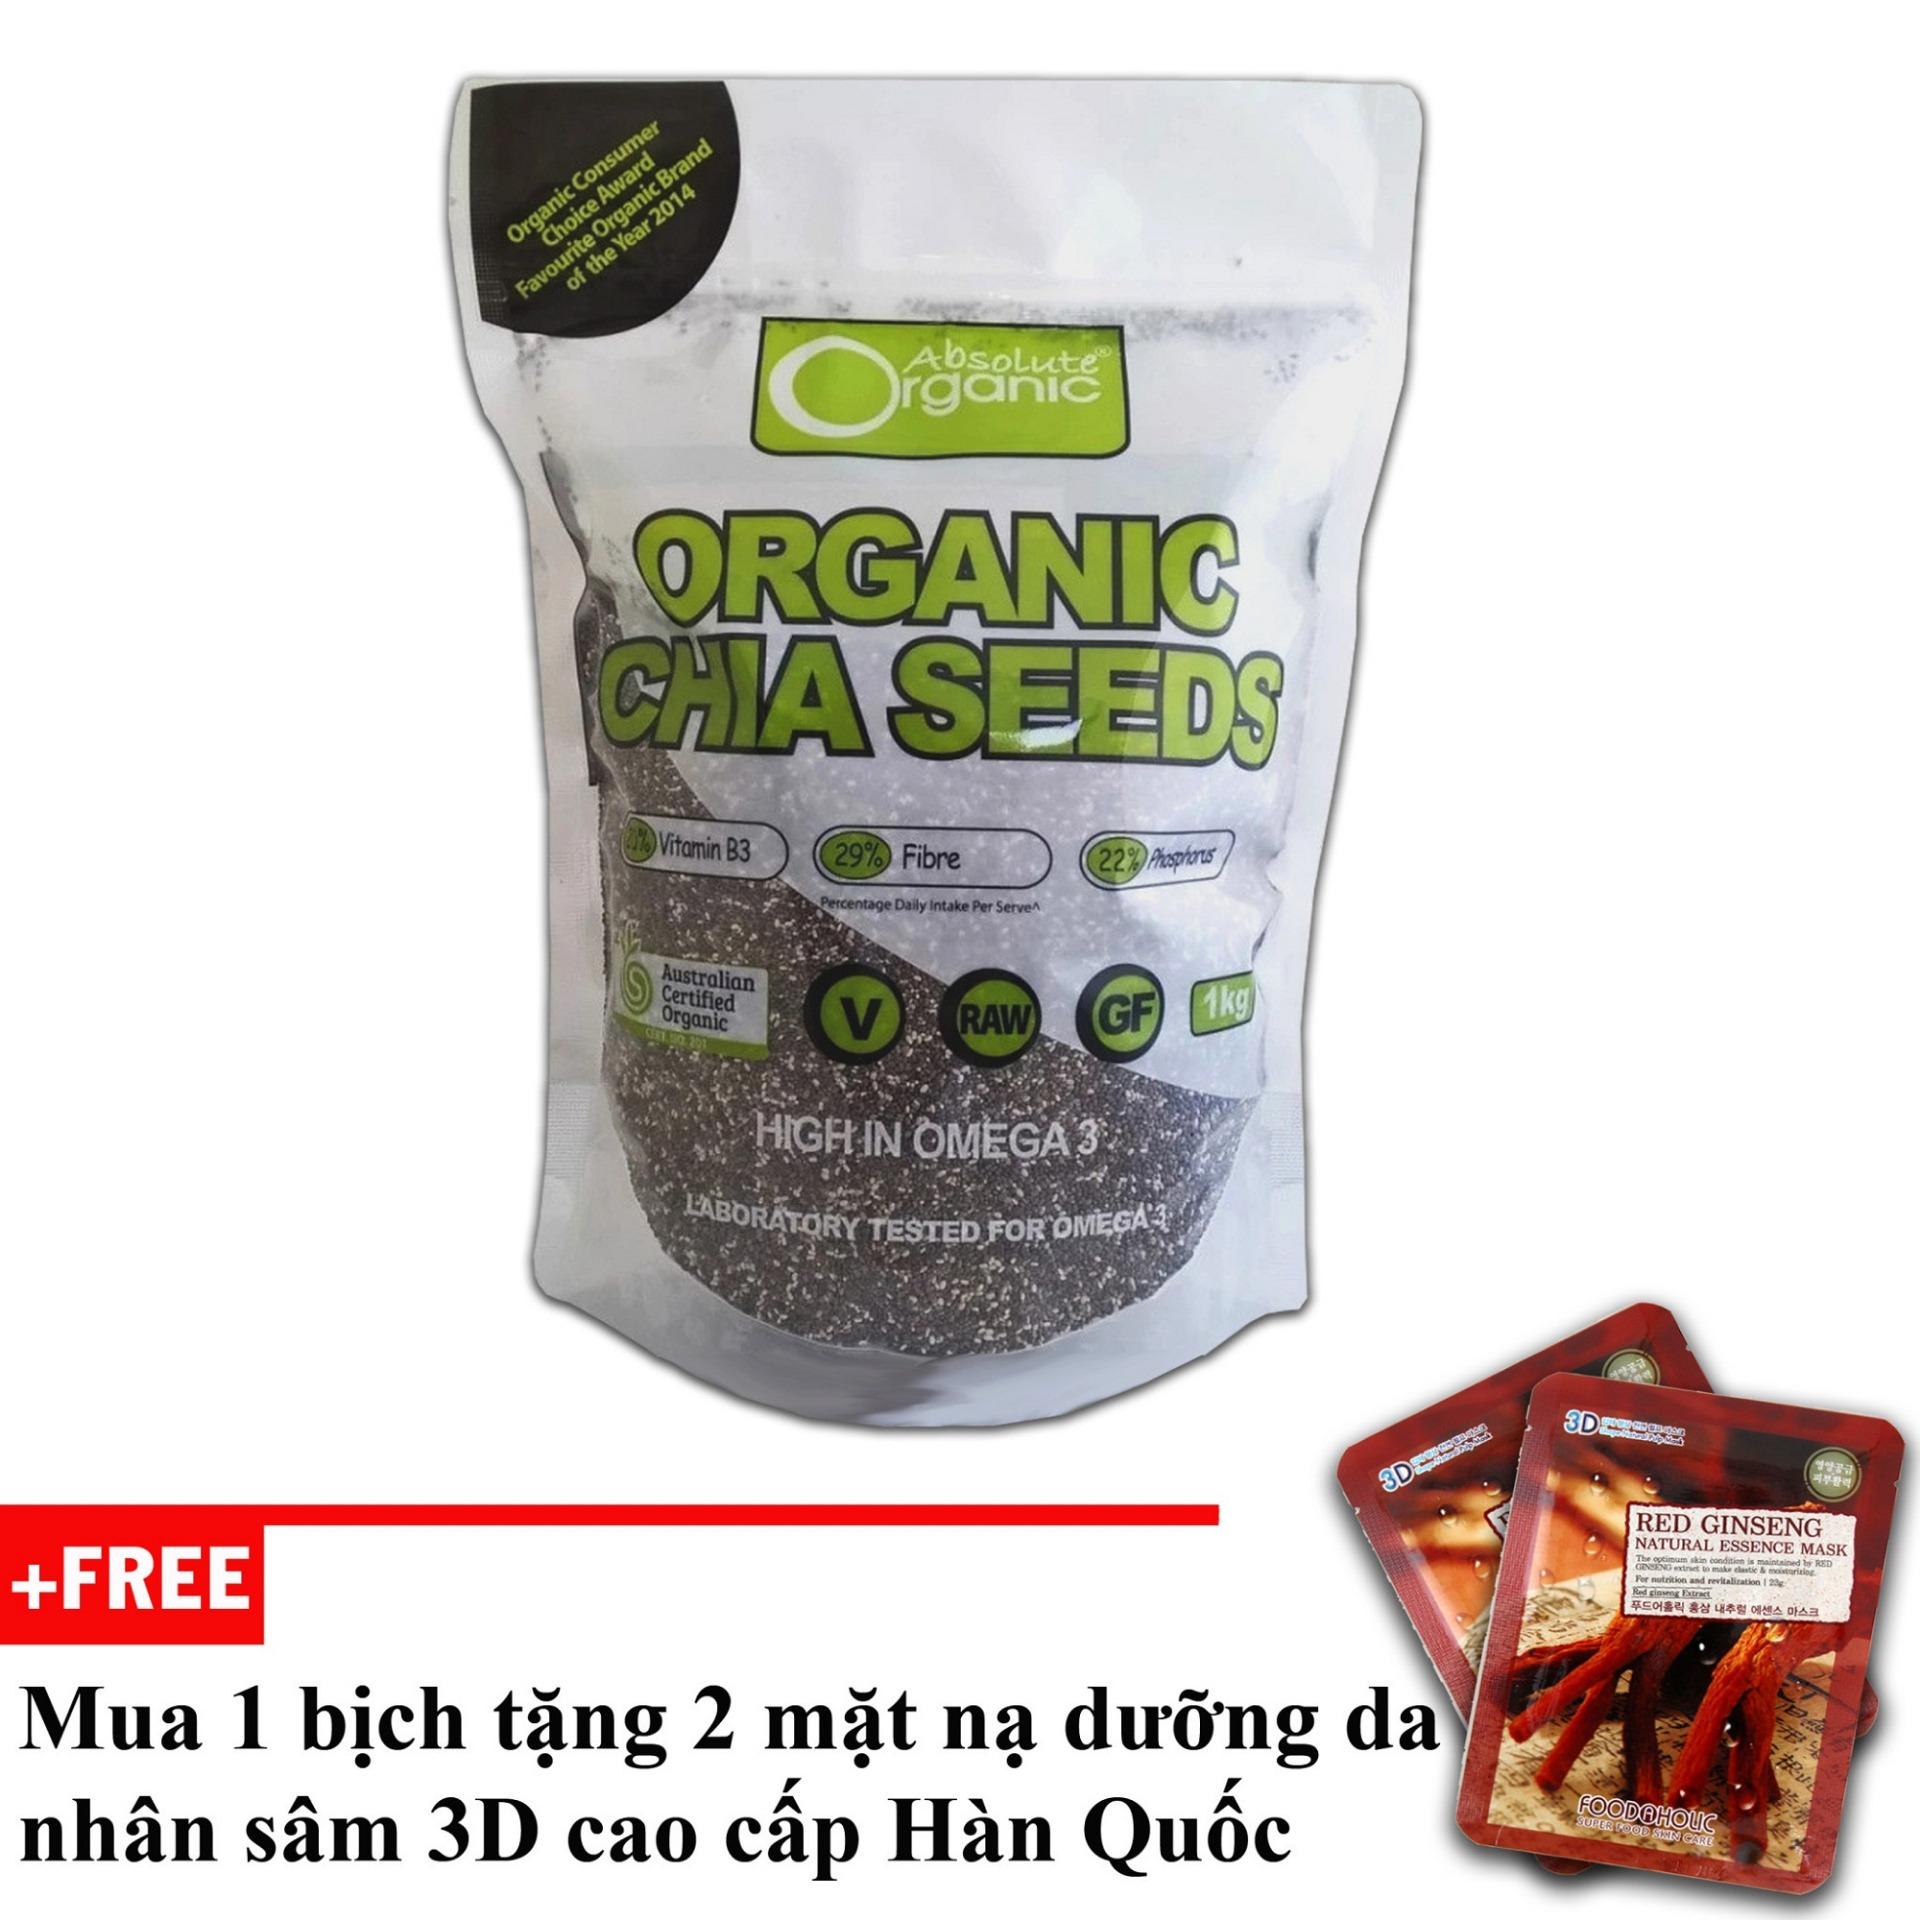 Hạt chia Organic Chia Seeds Australia 1kg + tặng 2 mặt nạ cao cấp Hàn Quốc [SuPhat Shop]